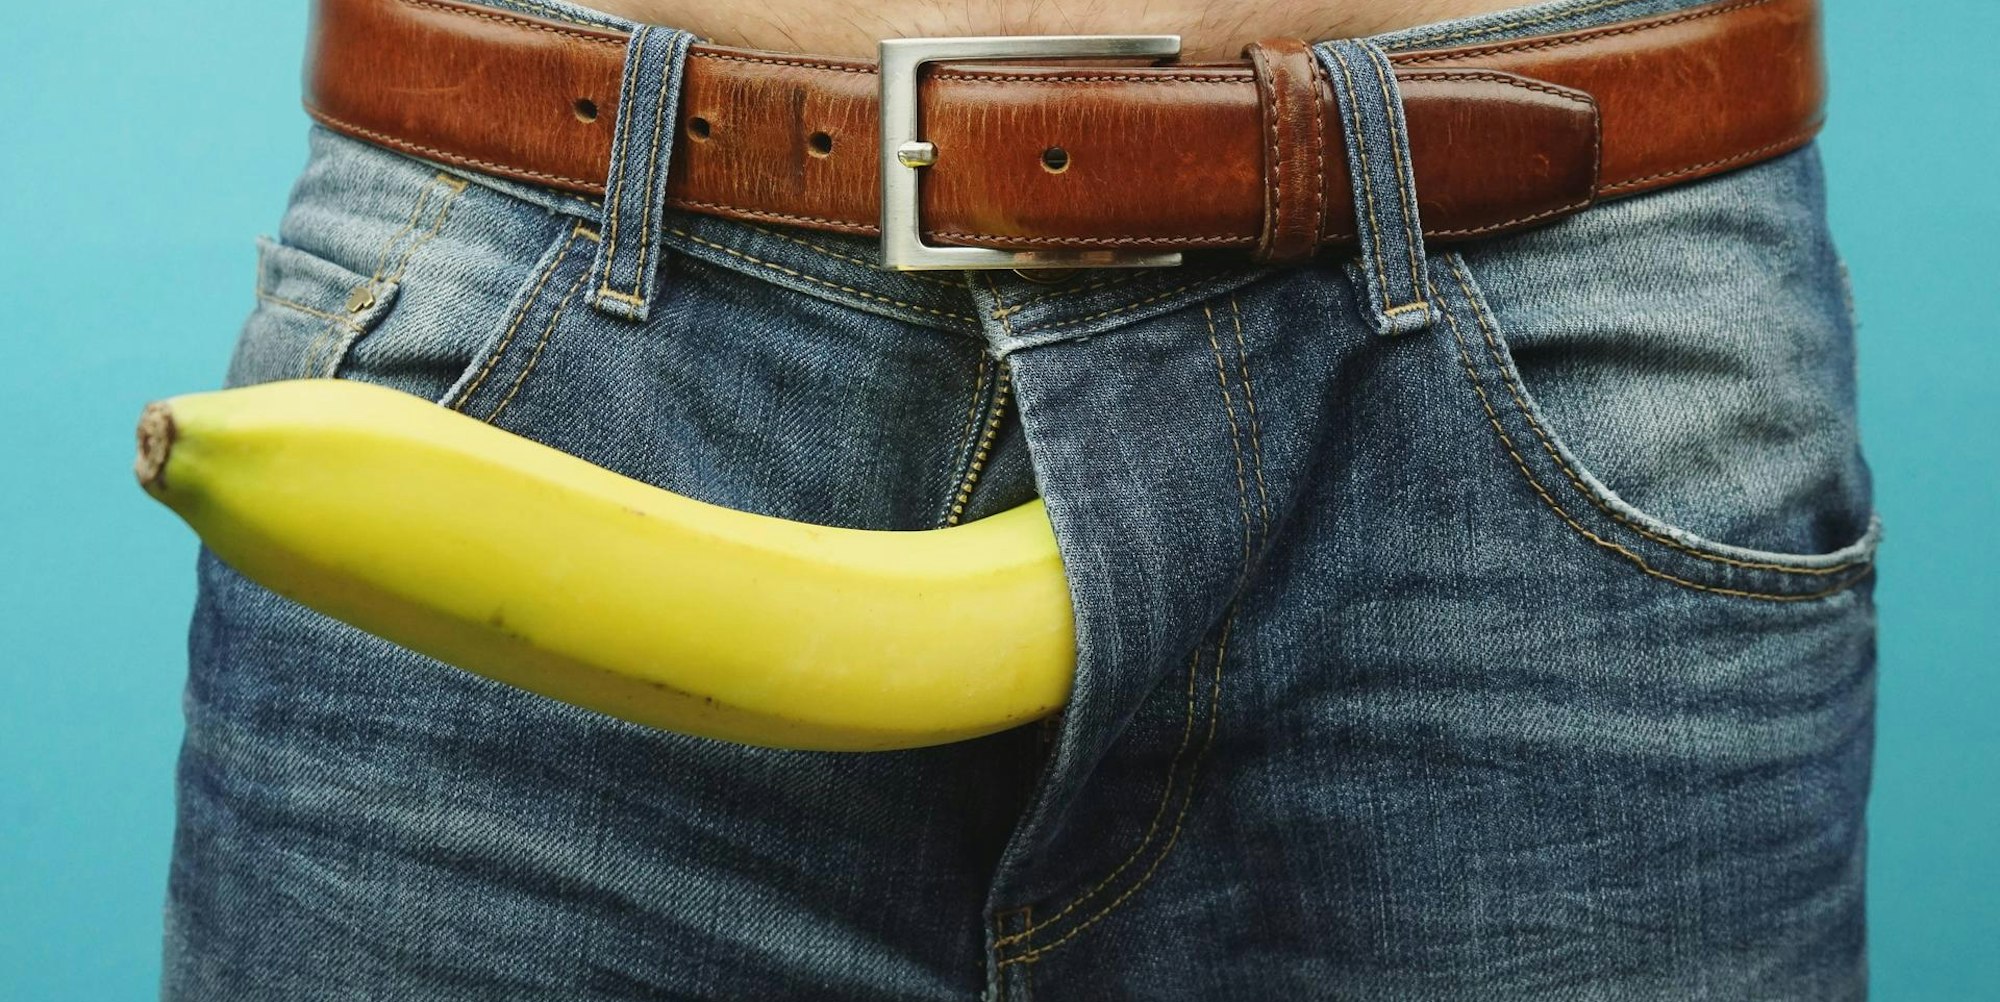 Mann hängt Banane aus der Hose